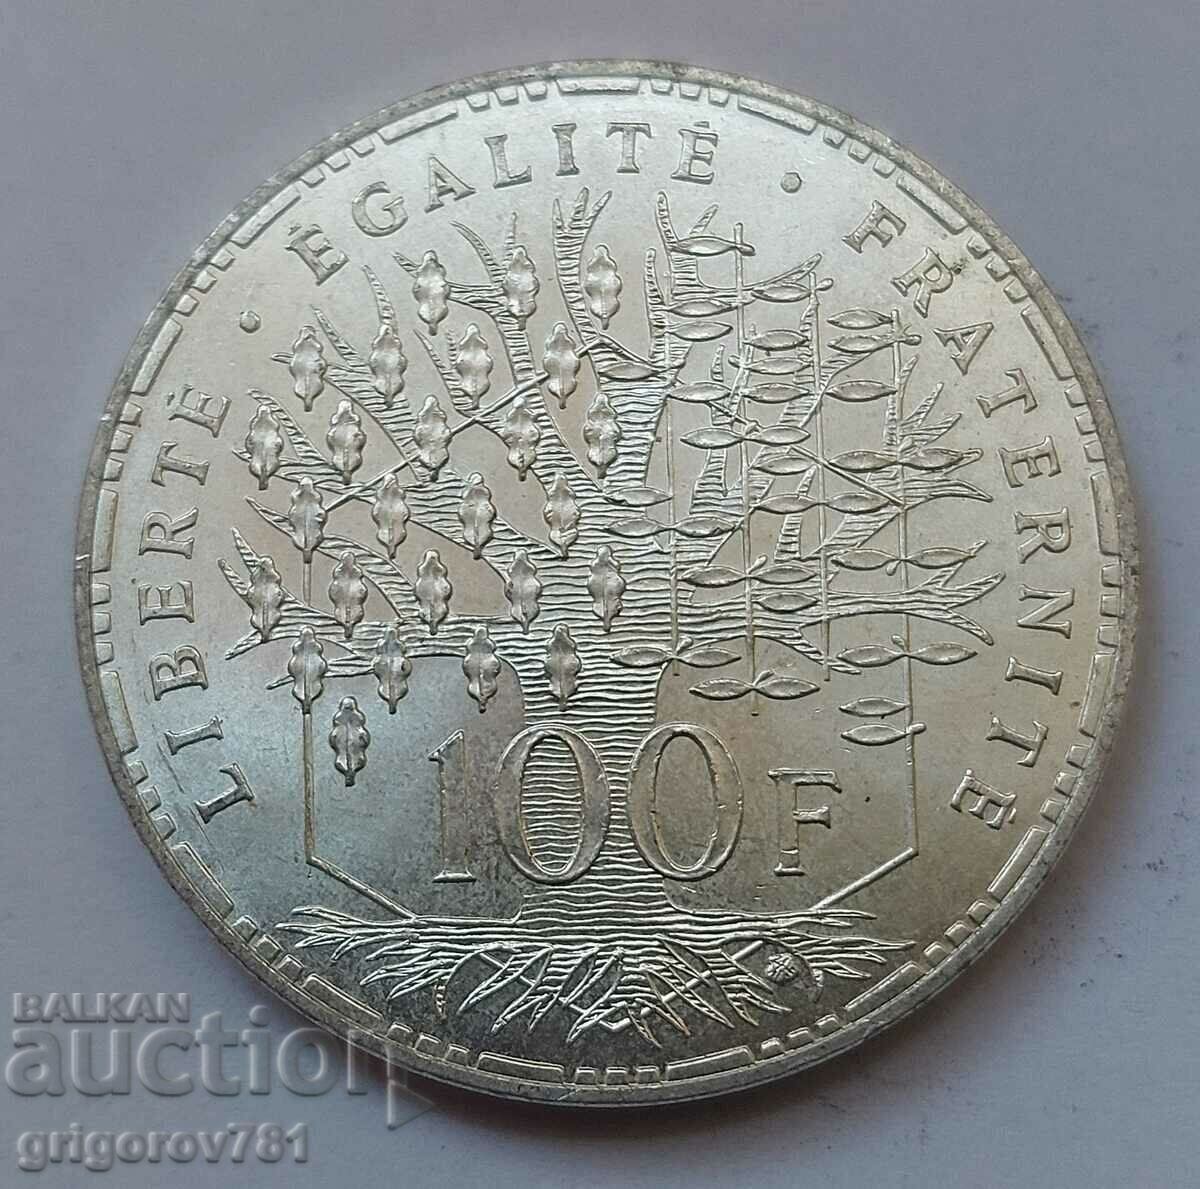 100 Φράγκα Ασημένιο Γαλλία 1982 - Ασημένιο νόμισμα #2